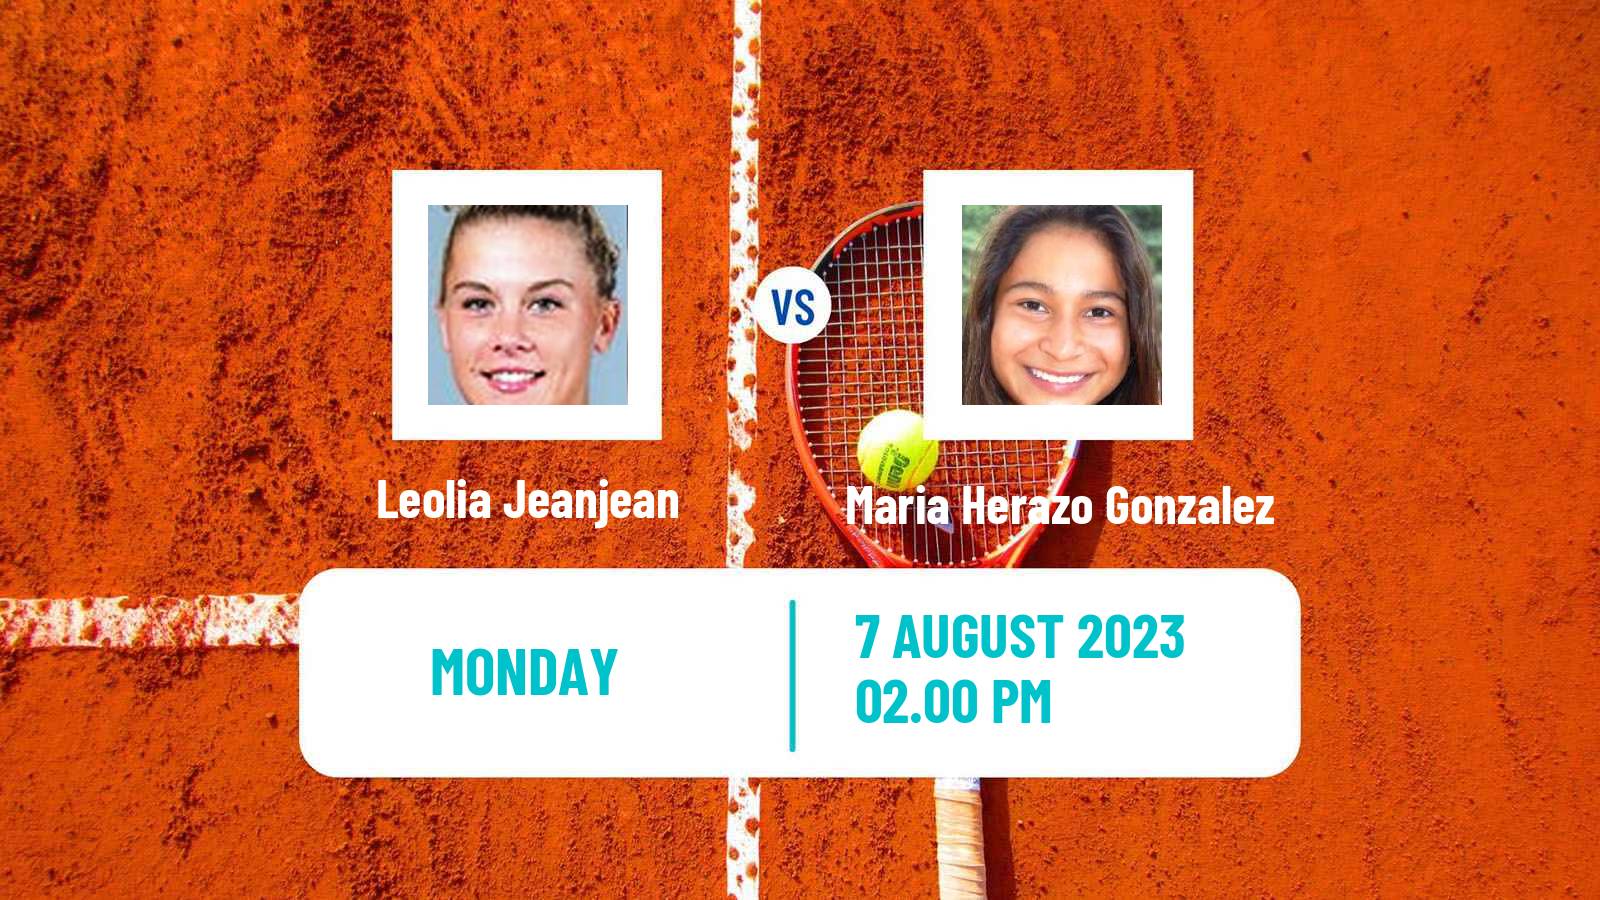 Tennis ITF W80 Brasilia Women 2023 Leolia Jeanjean - Maria Herazo Gonzalez